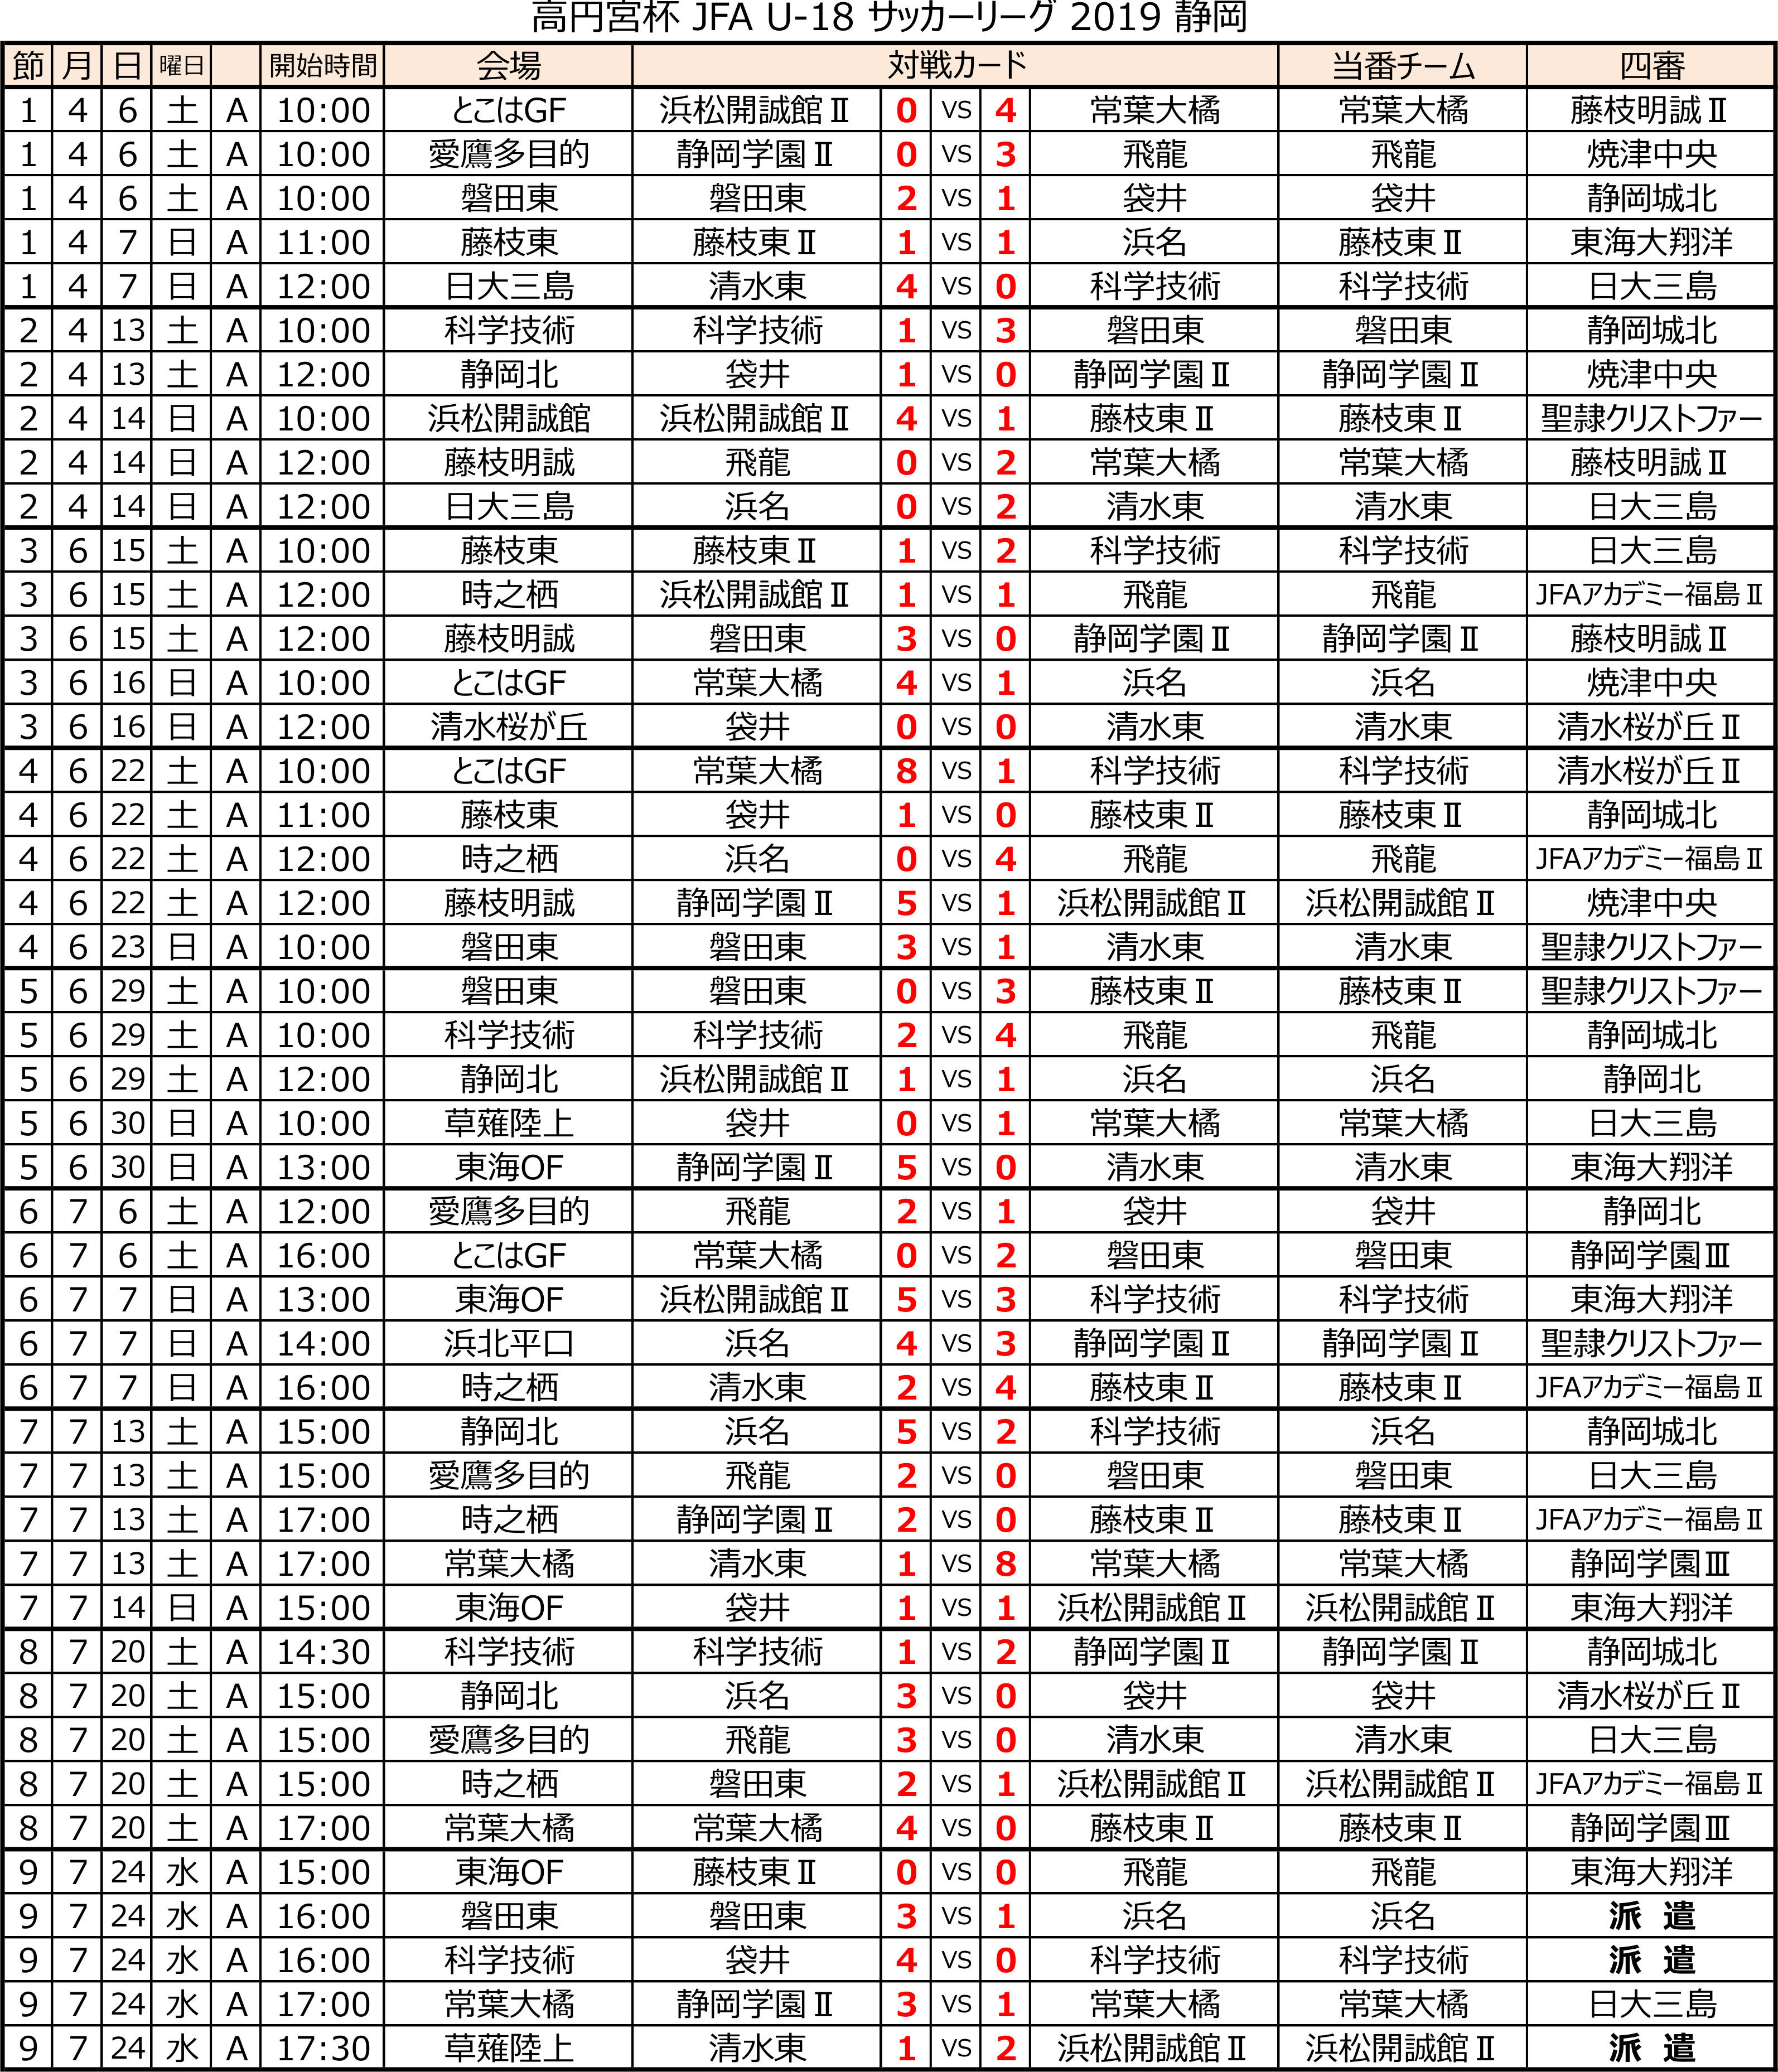 高円宮杯 JFA U-18サッカーリーグ2019 静岡 　Aリーグ前期　 トーナメント表